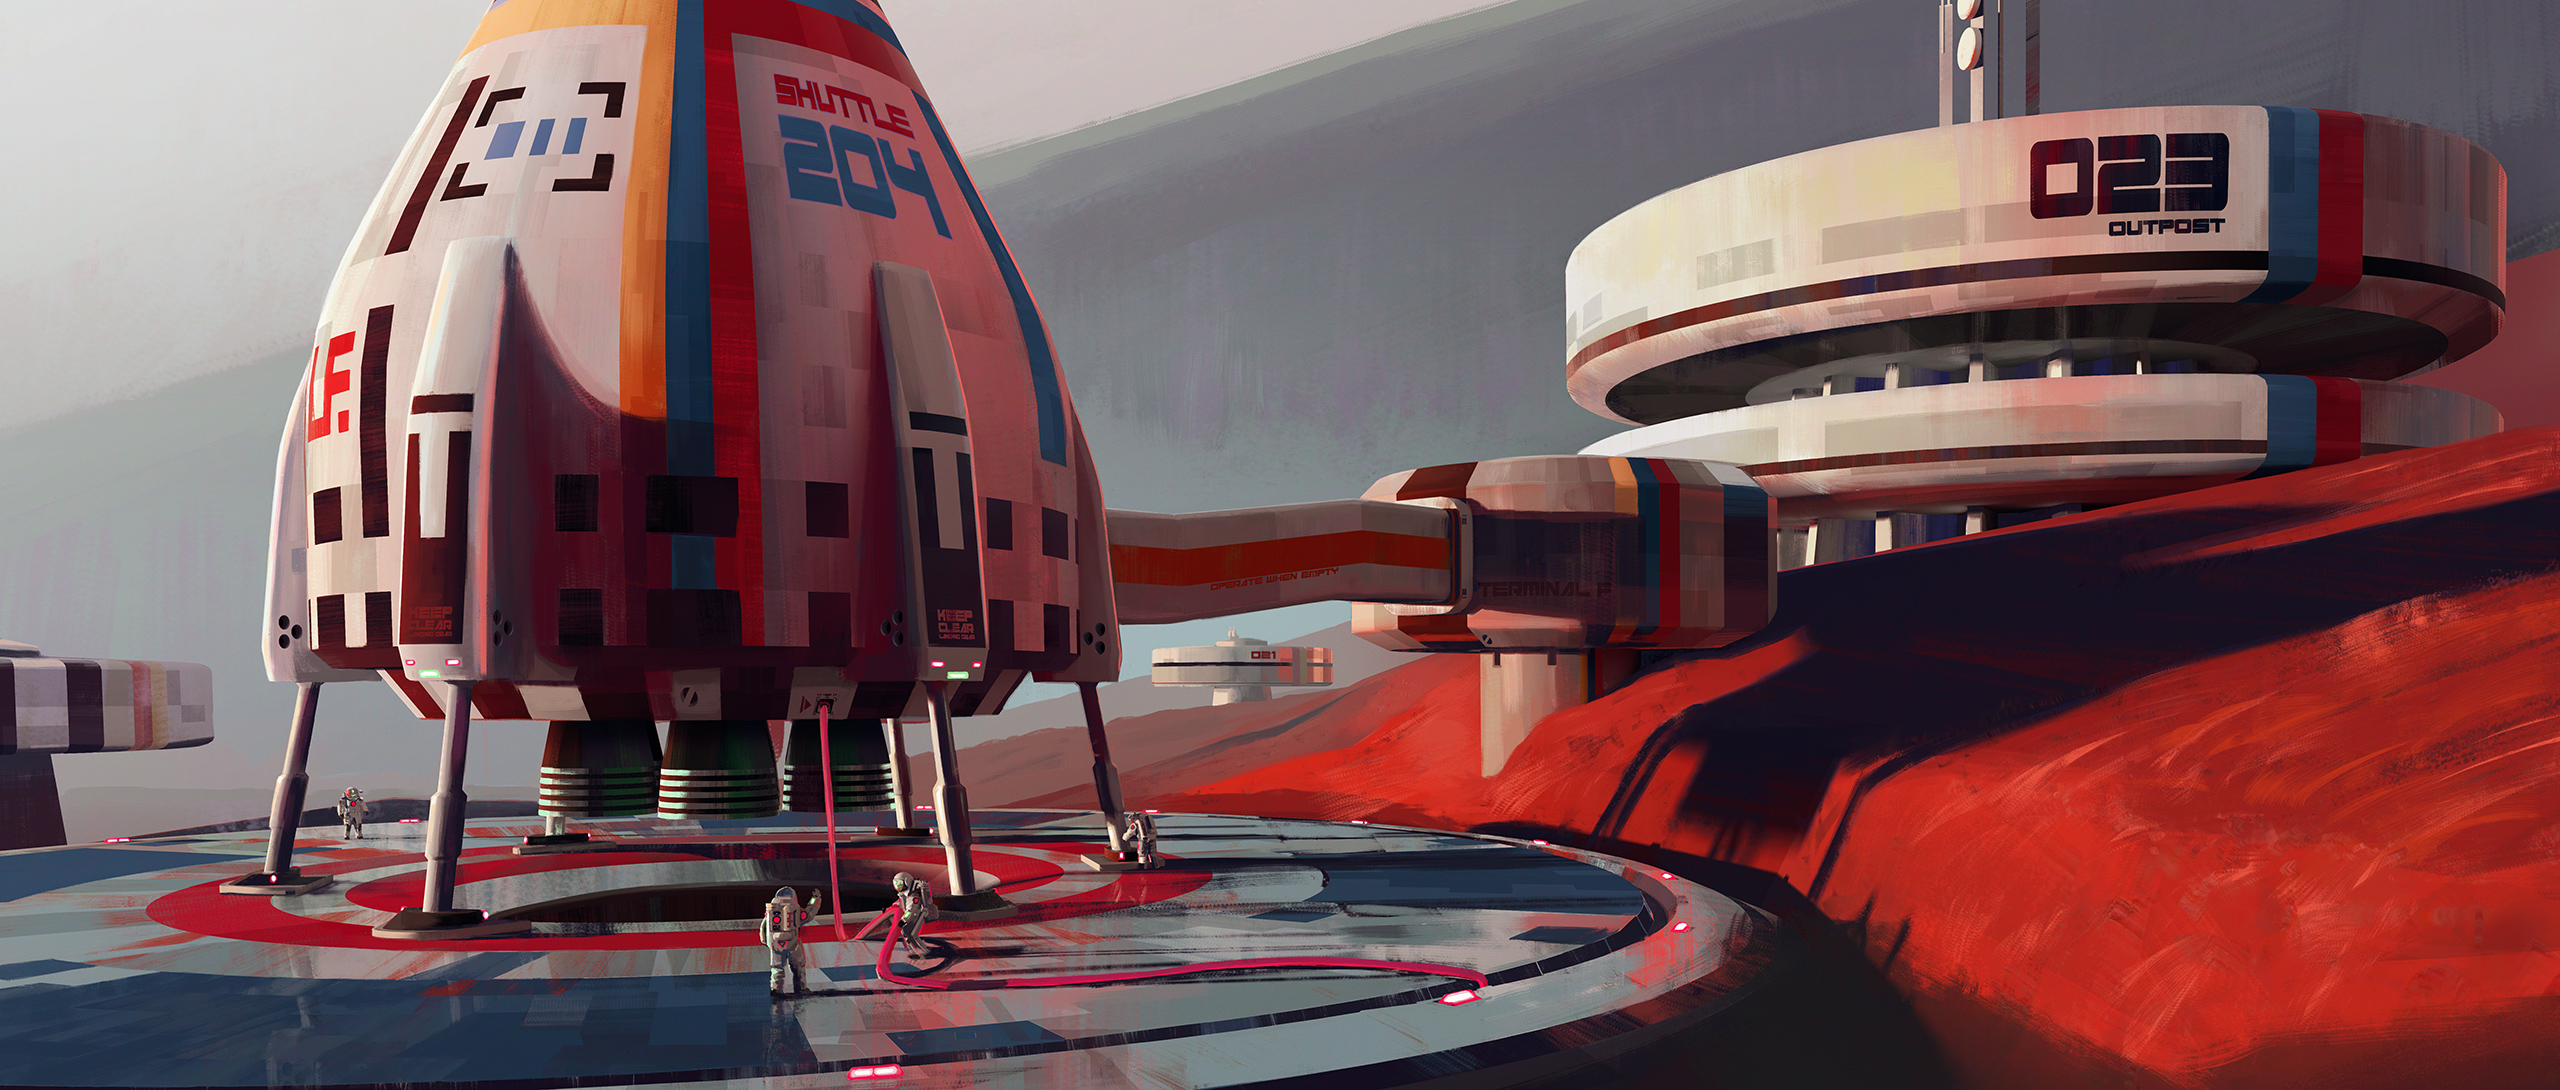 General 2560x1090 artwork digital art science fiction space spaceship